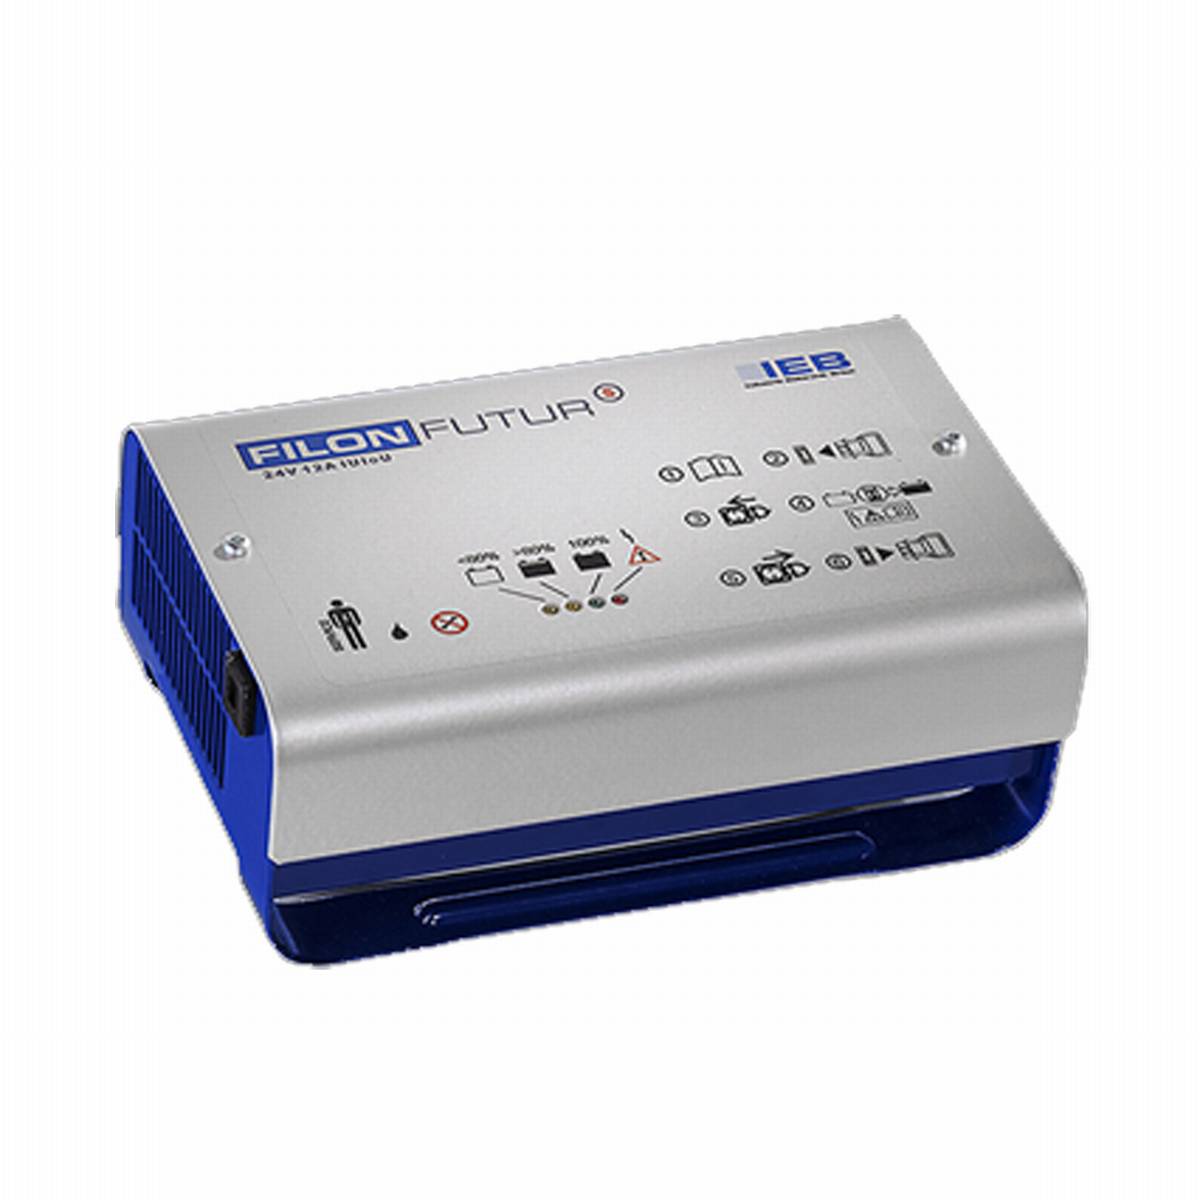 IEB Filon Futur S E230 G24/8 B65-FP (rete AC) per batteria al piombo 24V 8A corrente di carica spina XLR